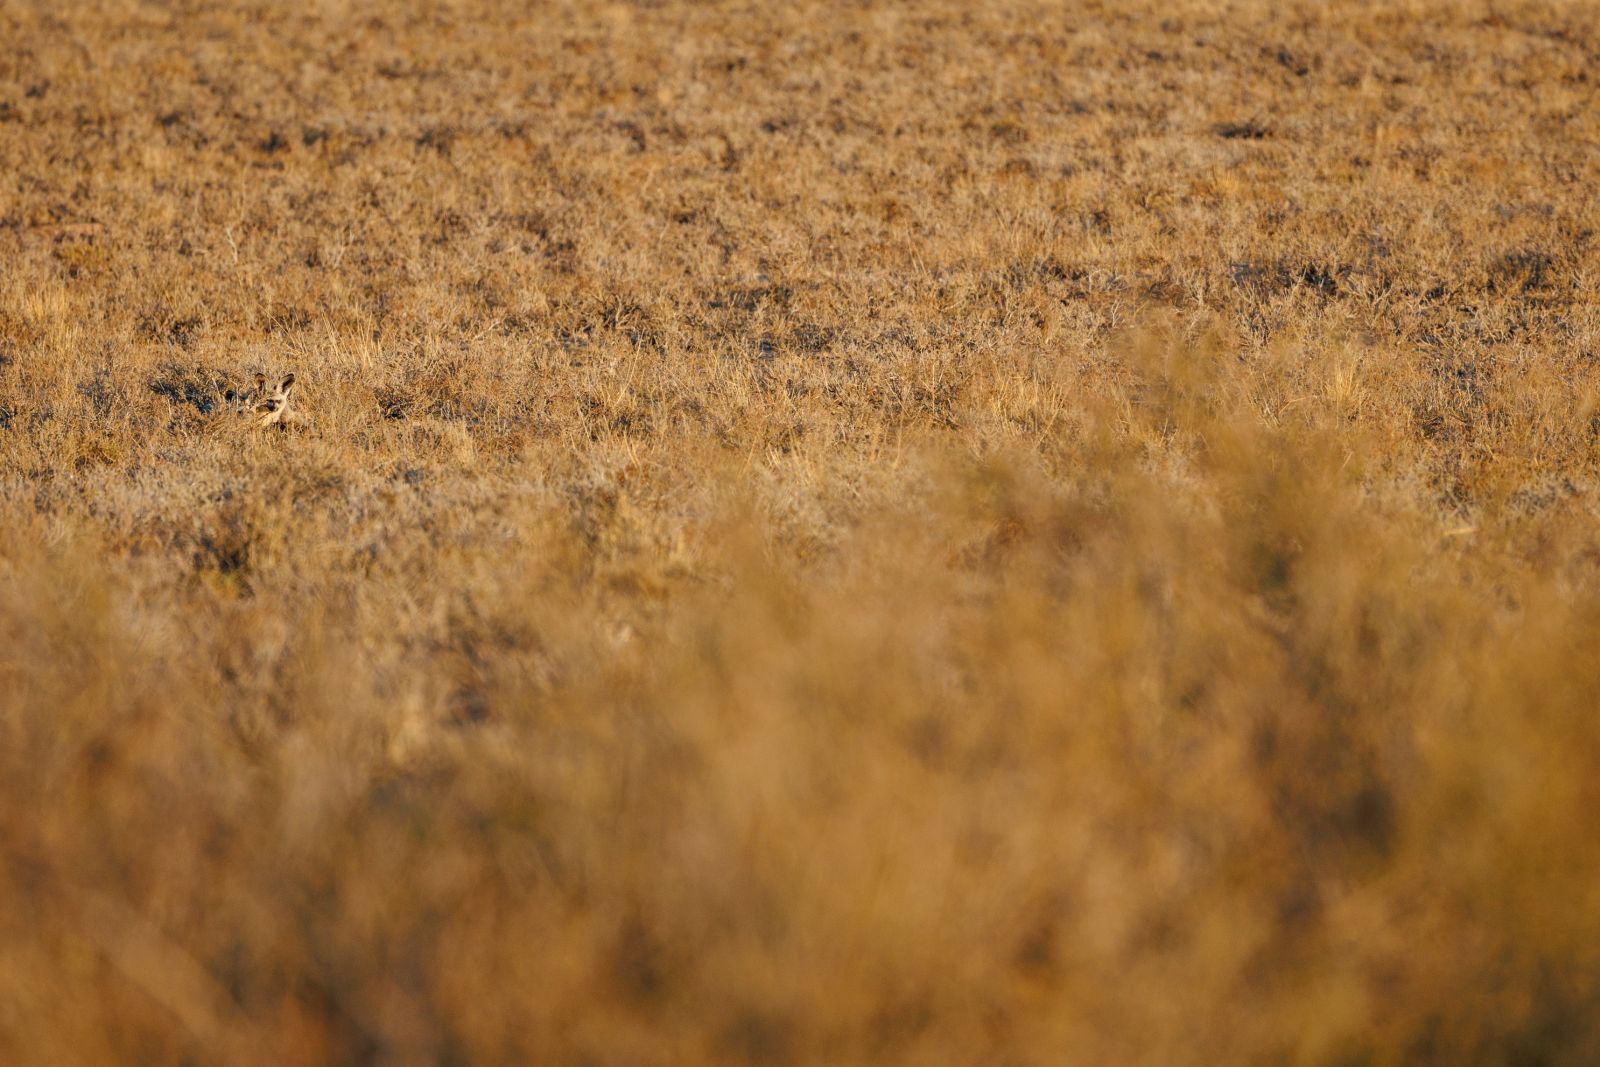 Suchbild mit Löffelhund – wenn sich die Tiere nicht bewegen, sind sie mitunter kaum zu erkennen (Kgalagadi Transfrontier Park).